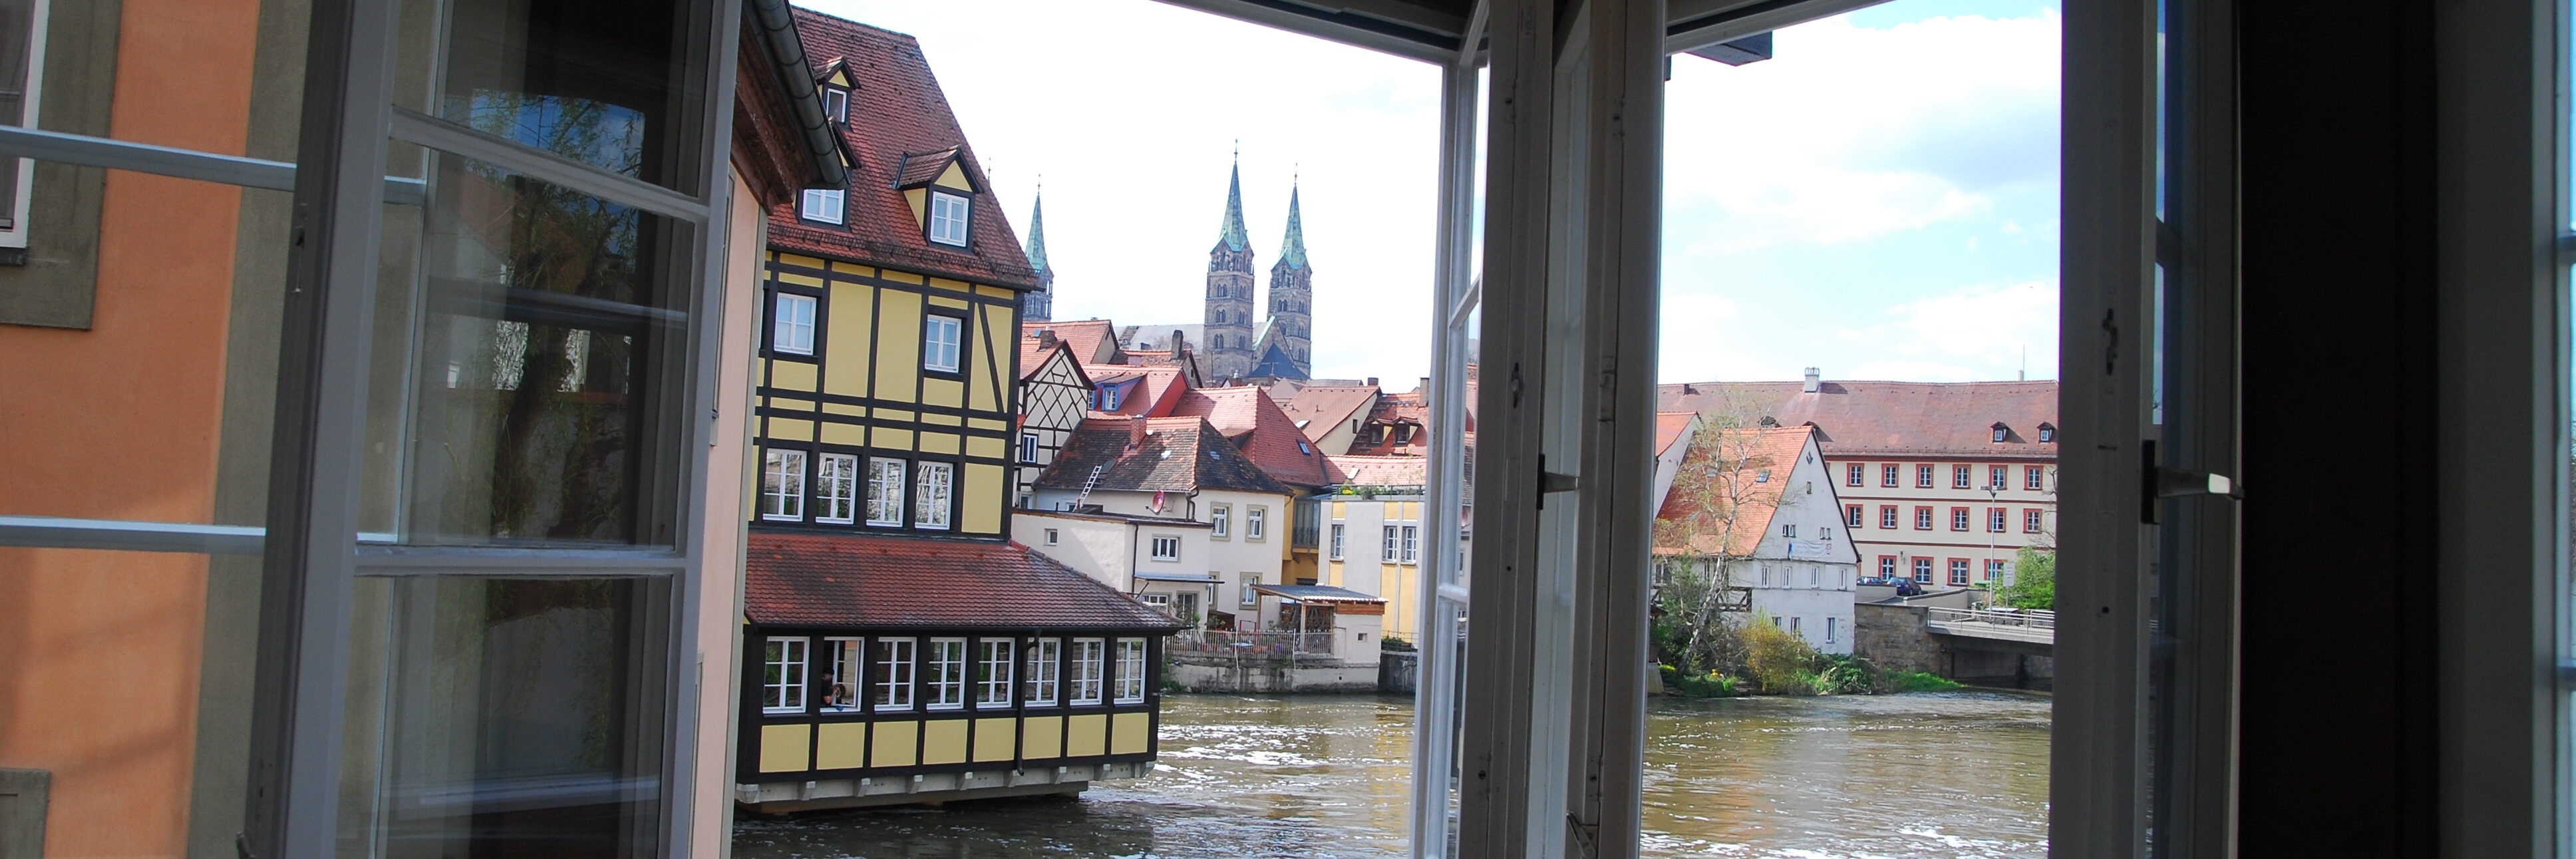 Studierendenwohnheim Obere Mühlen, Blick aus Fenster